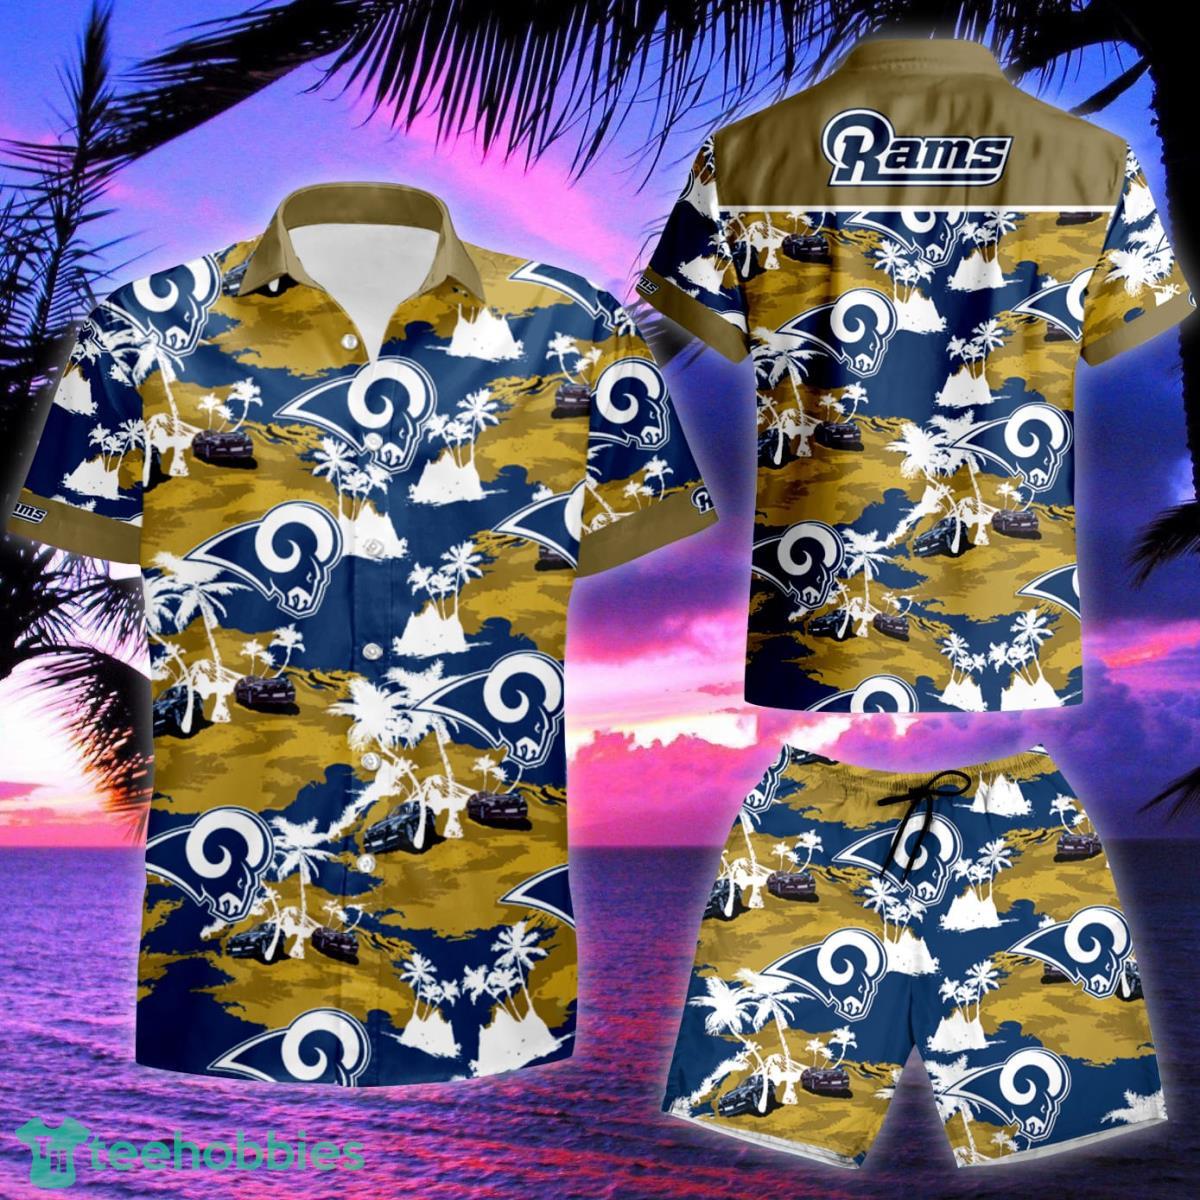 Los Angeles Rams Nfl Football Team For Fans Hawaiian Shirt & Short